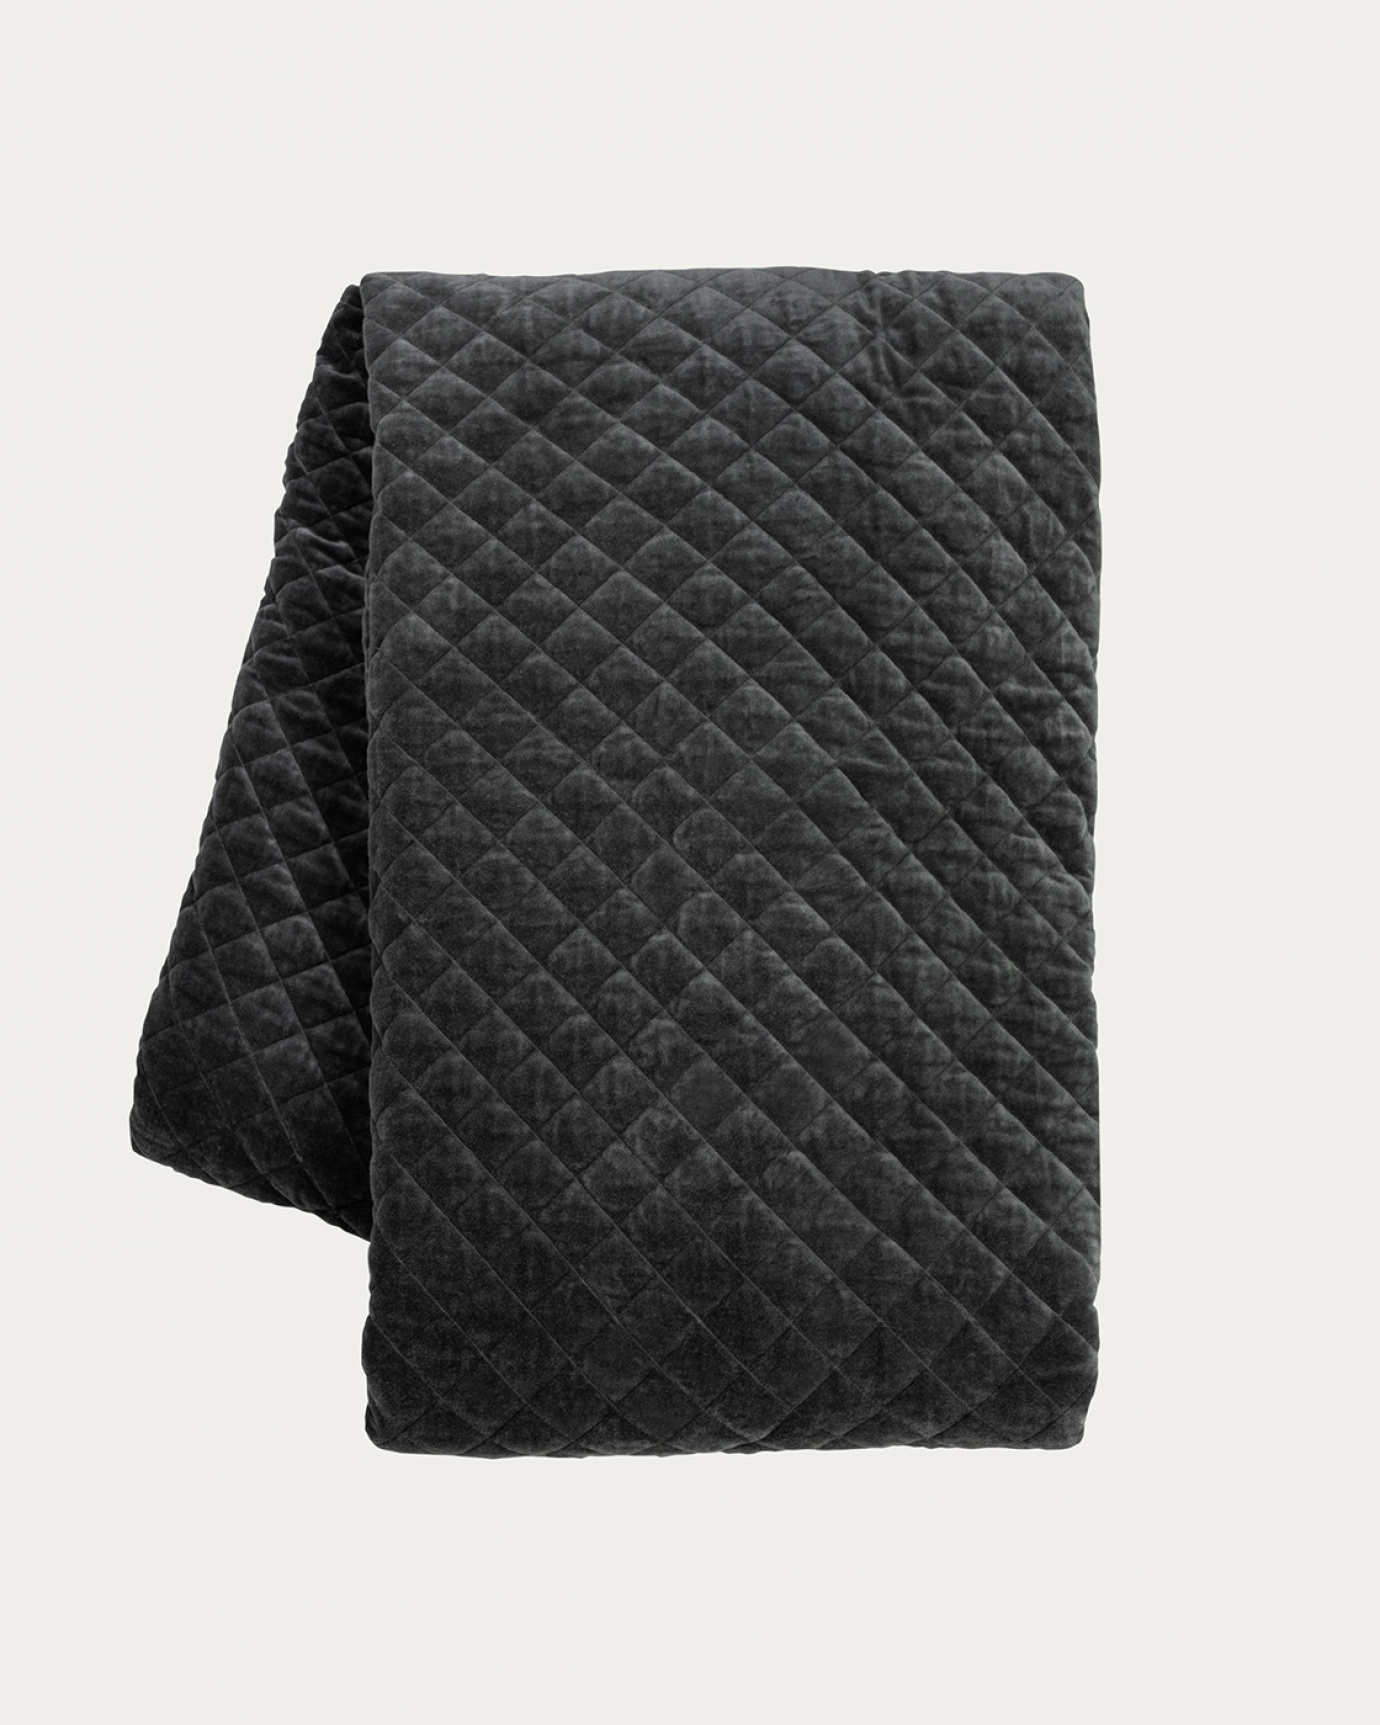 Produktbild dunkles anthrazitgrau Tagesdecke PICCOLO aus weichem Baumwollsamt für Einzelbett von LINUM DESIGN. Größe 170x260 cm.